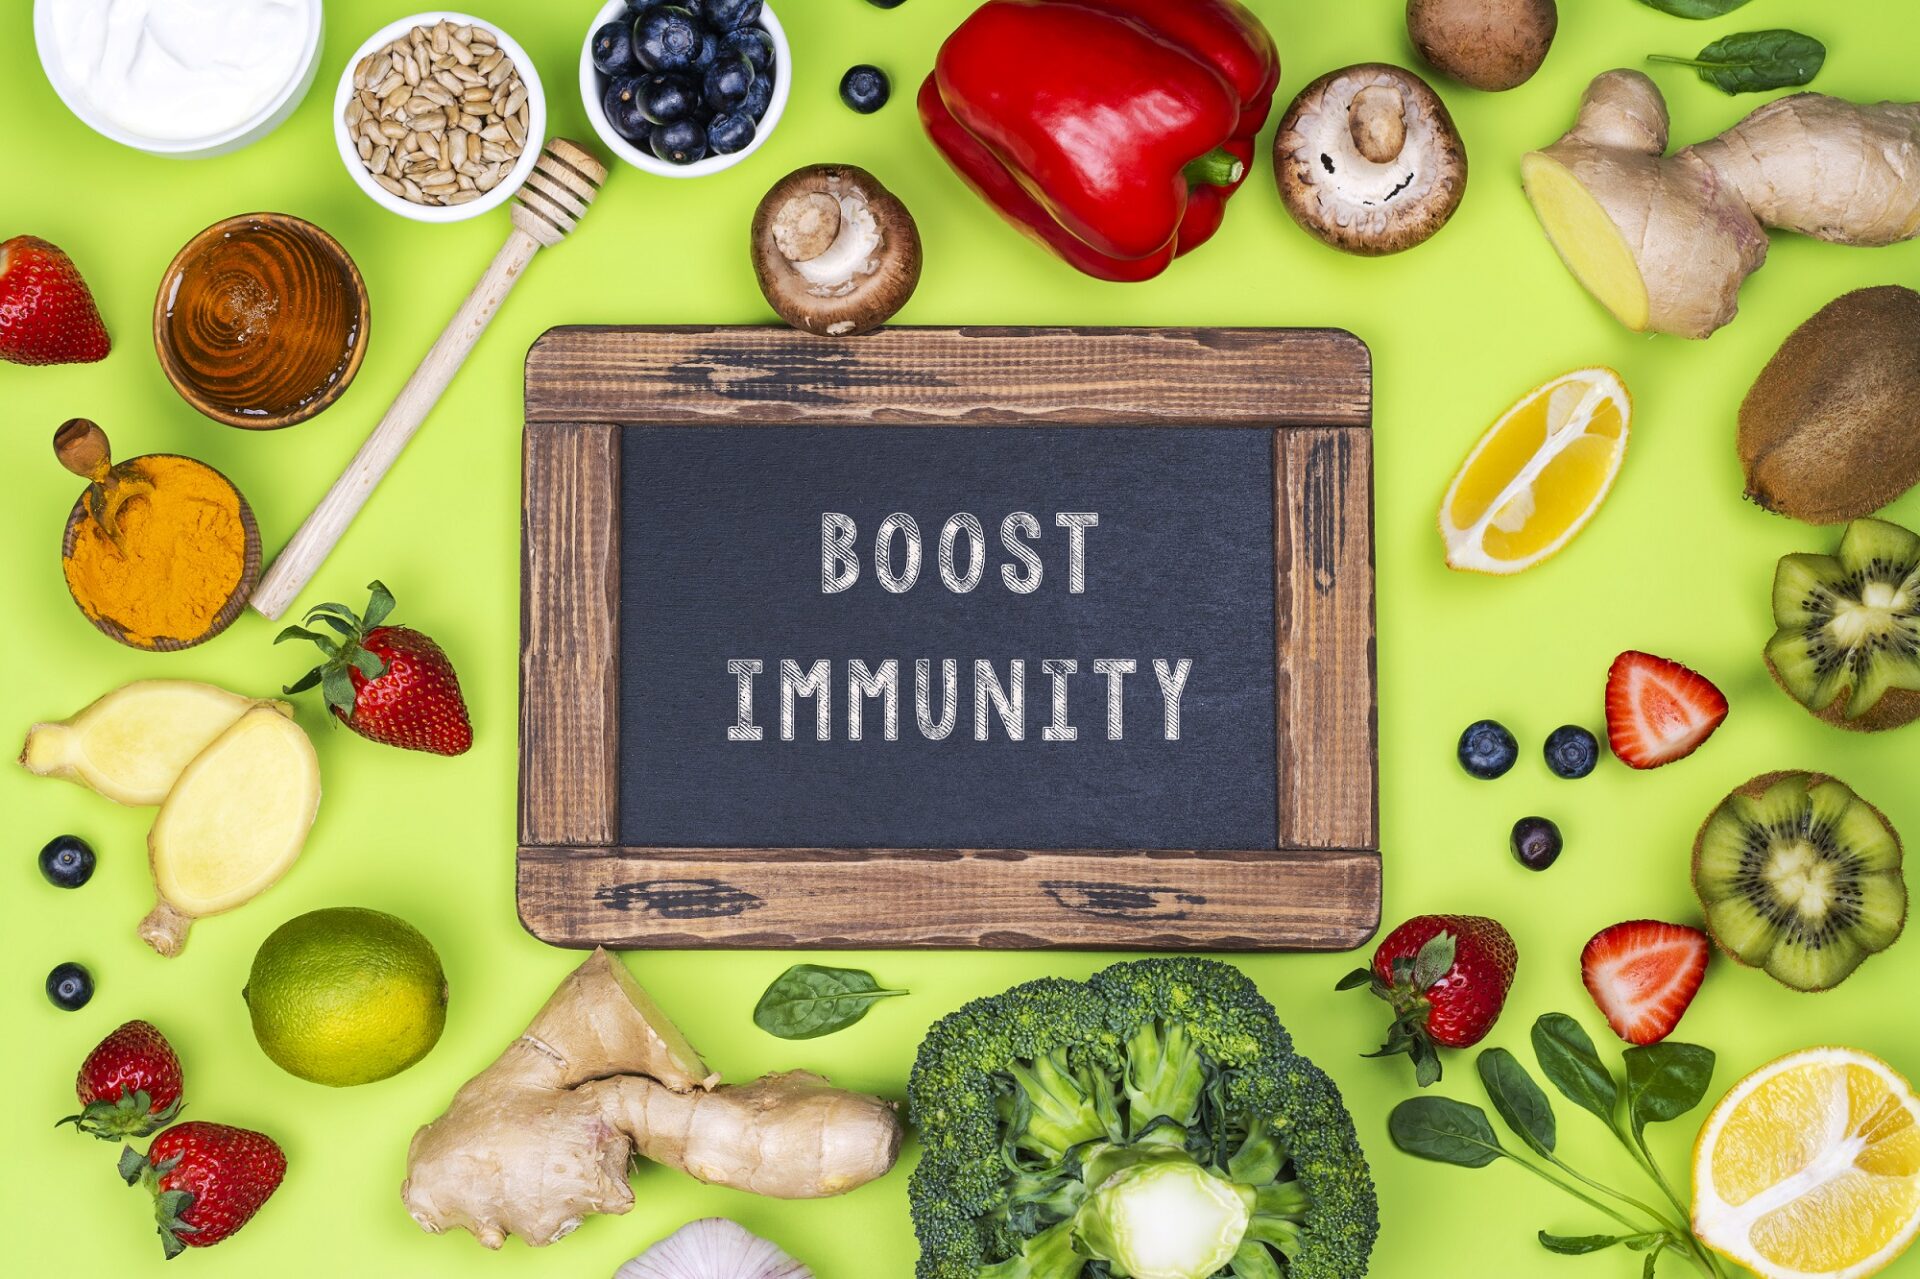 Boost immune responses